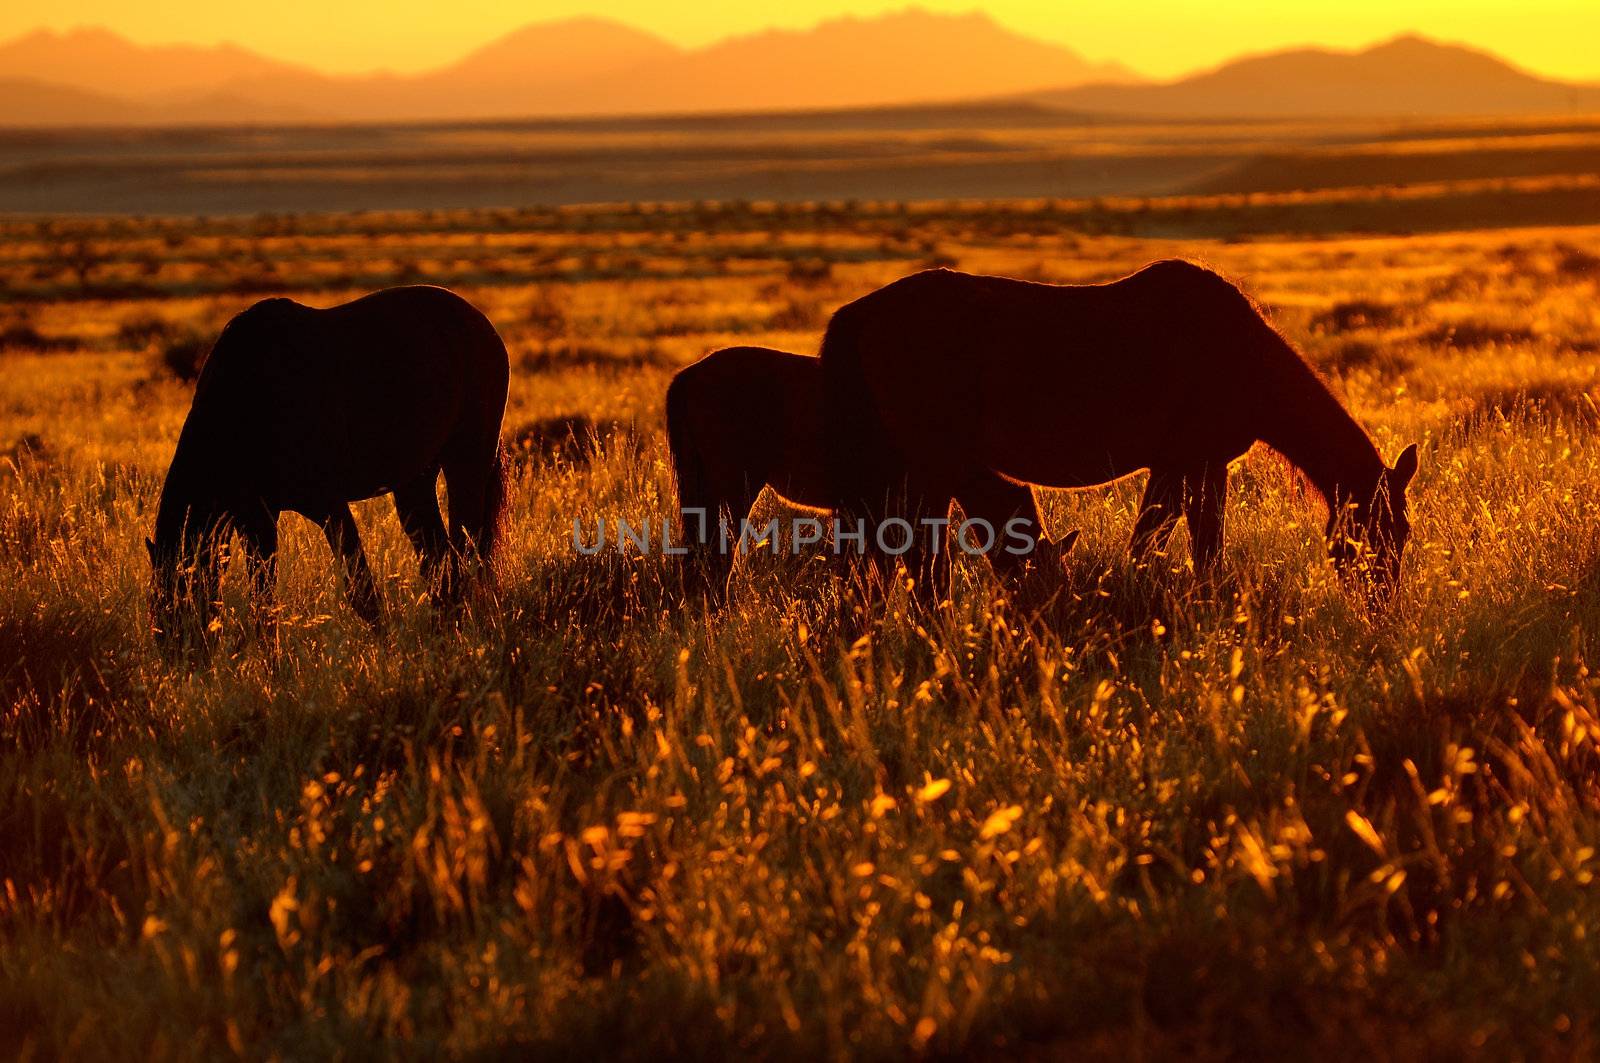 Wild Horses of the Namib near Aus, Namibia.